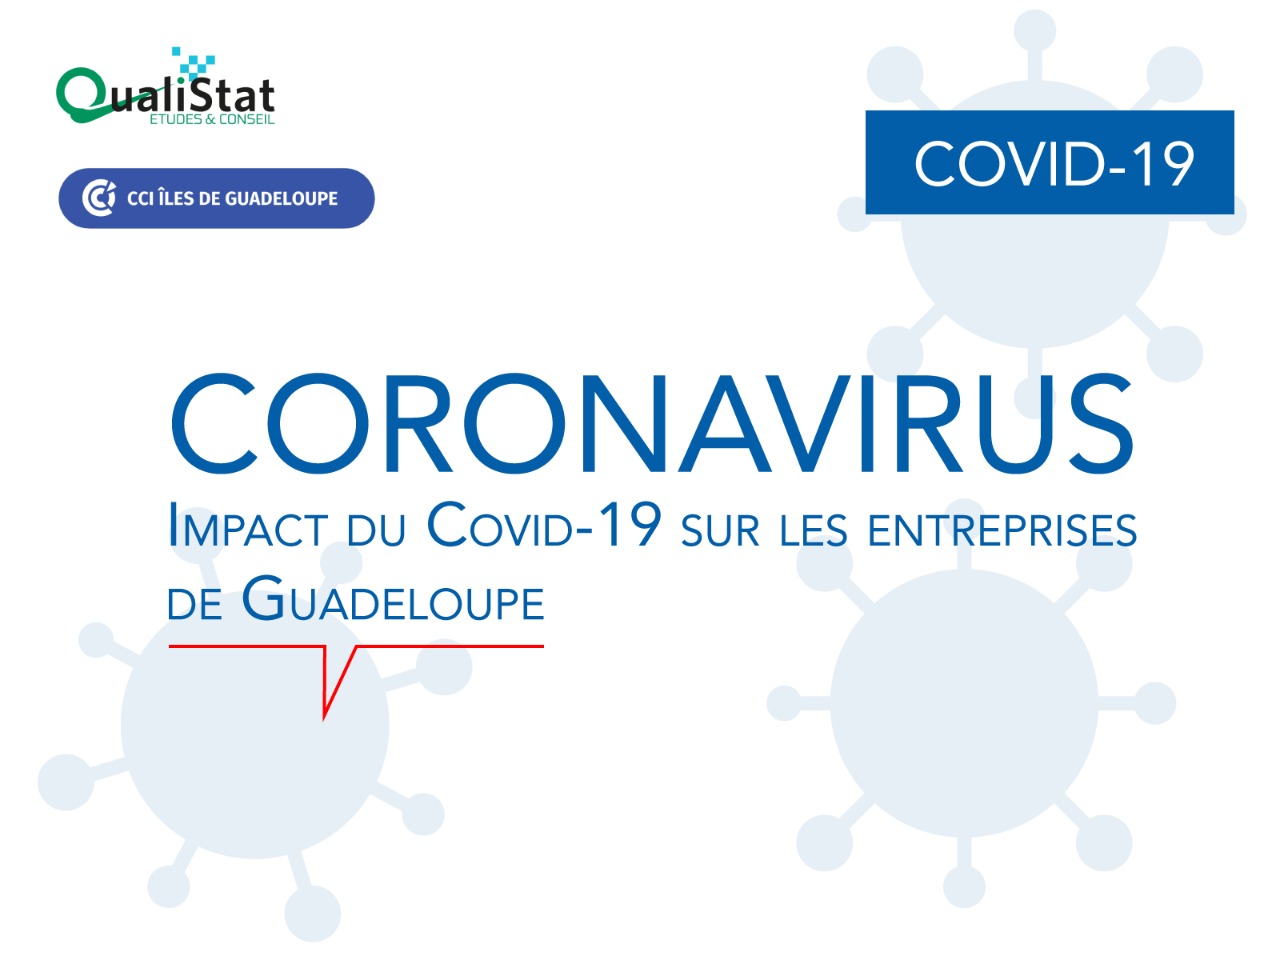 Impact du COVID-19 sur les entreprises de Guadeloupe